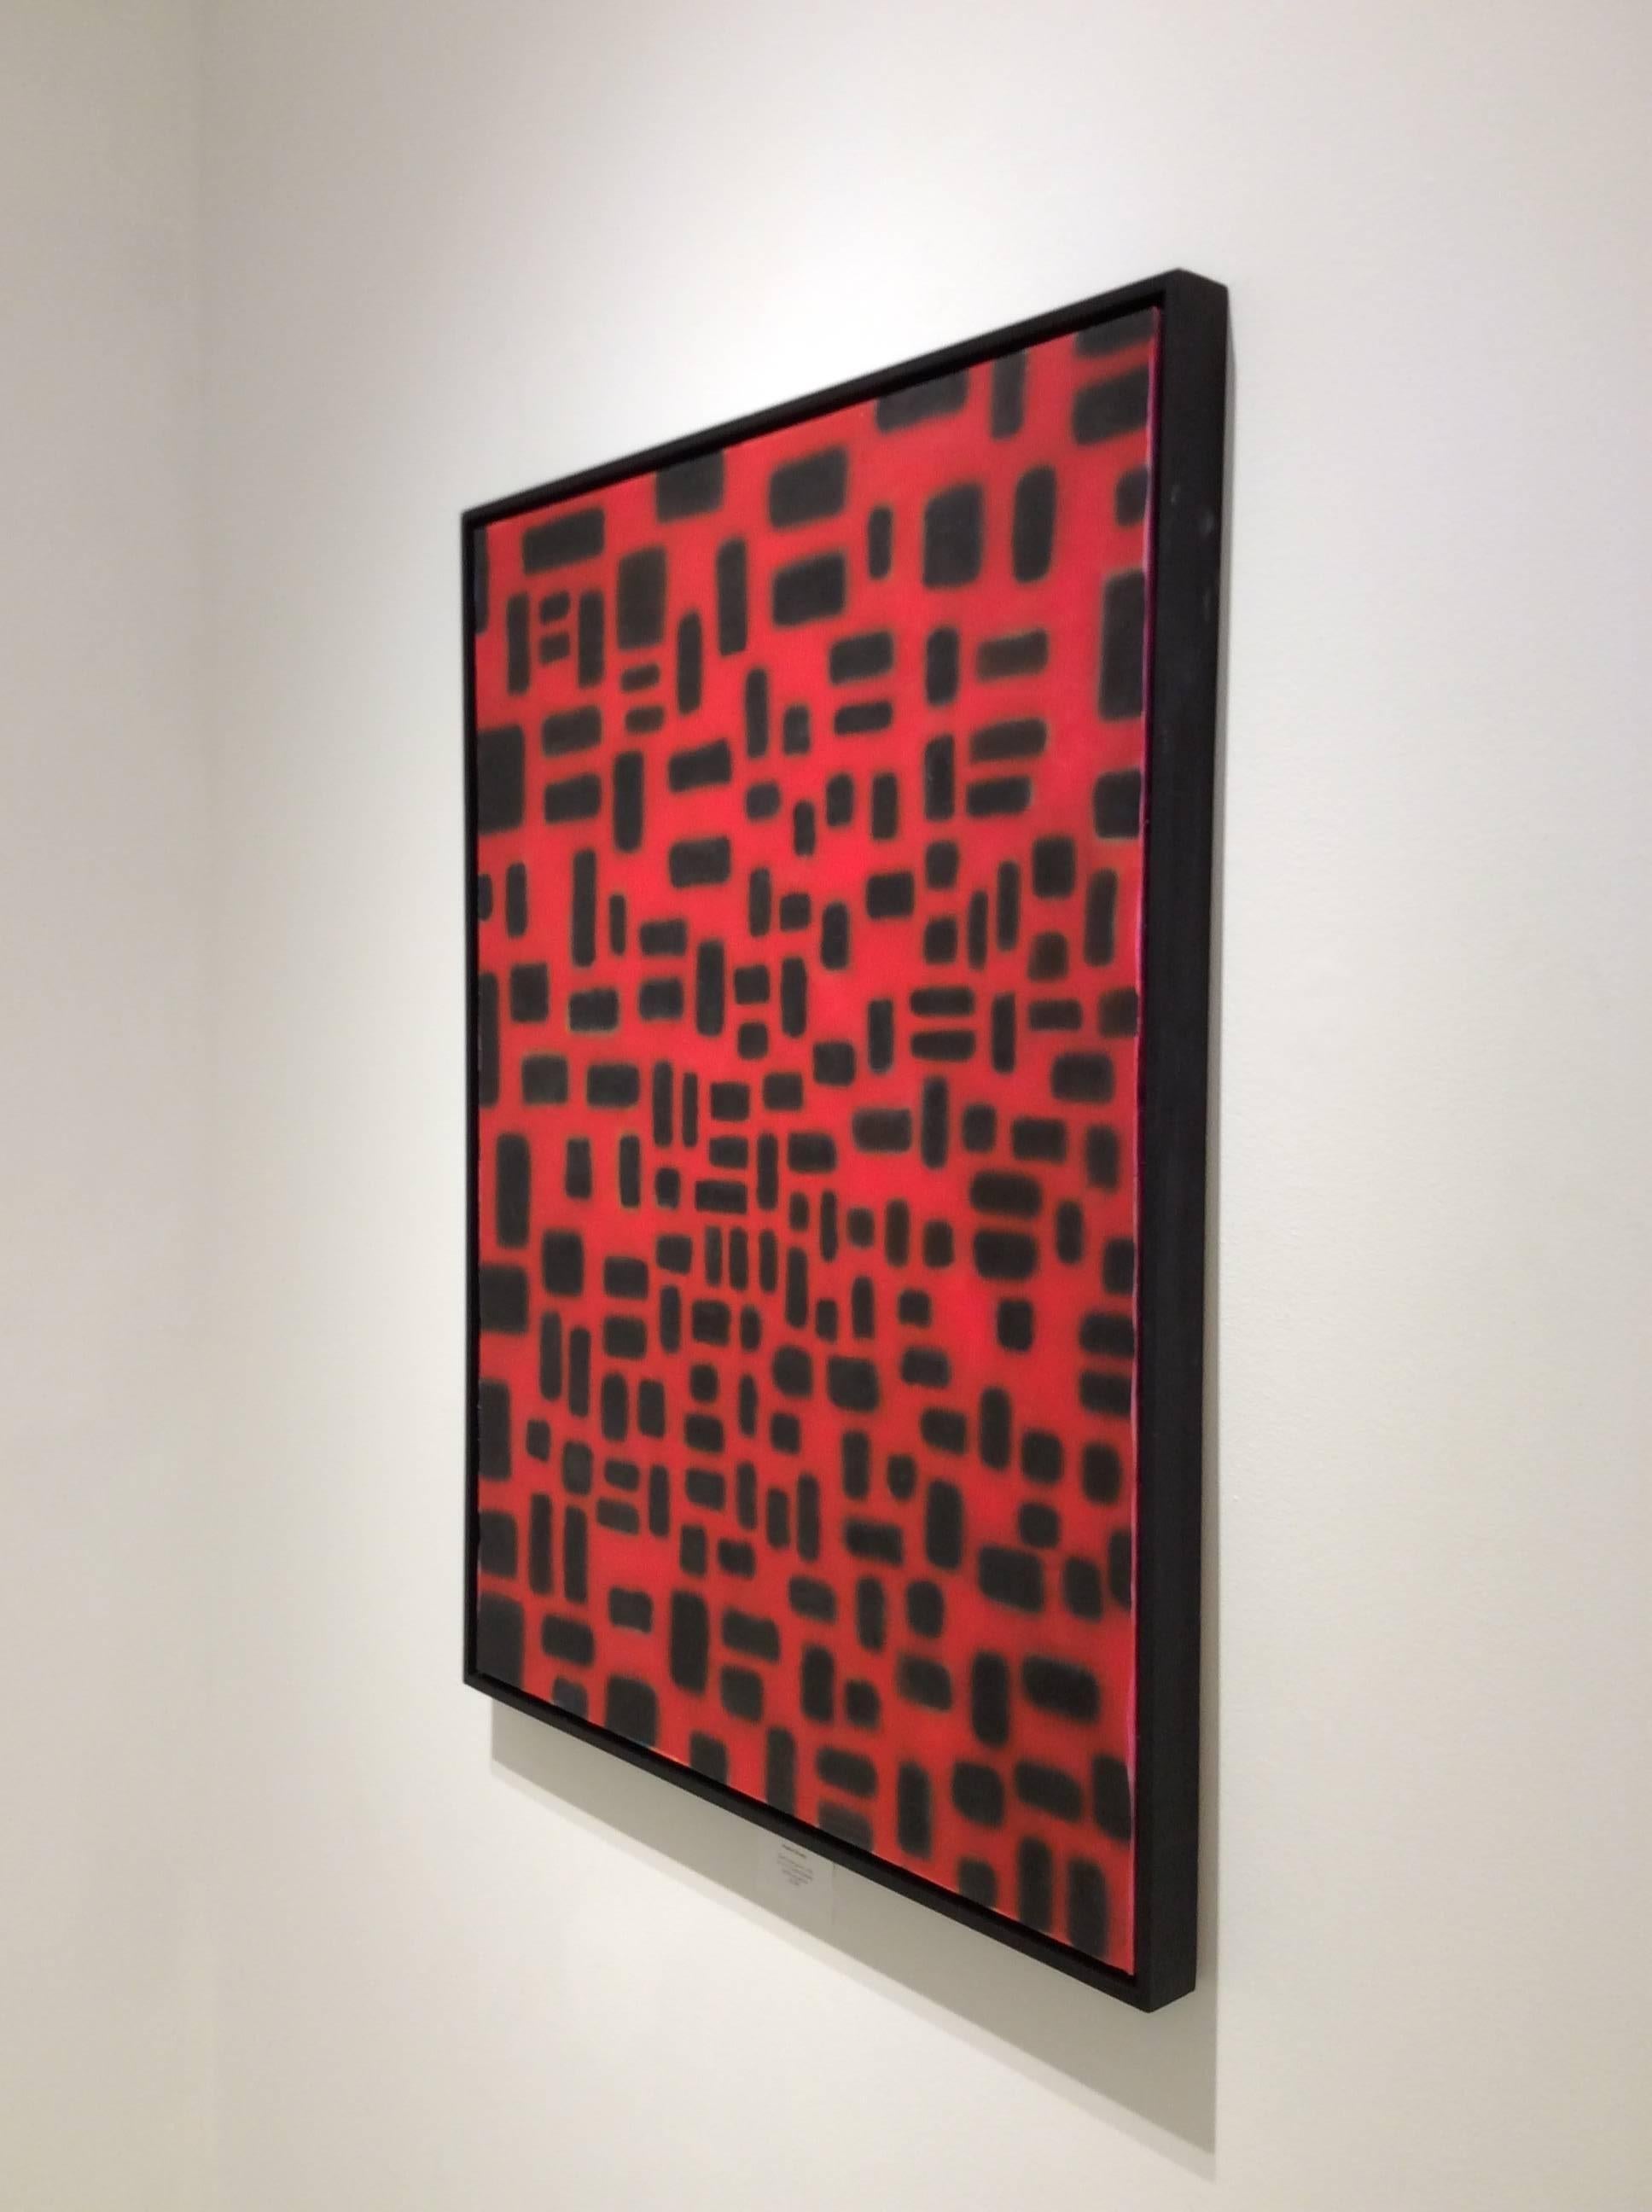 acrylgemälde auf Leinwand
40 x 30 Zoll in dünnem schwarz lackiertem Holzrahmen

Dieses kühn gemalte abstrakte Bild in Rot und Schwarz wurde 1994 von dem Autodidakten Stephen Brophy fertiggestellt. Nachdem er sich hauptsächlich auf Landschaften und